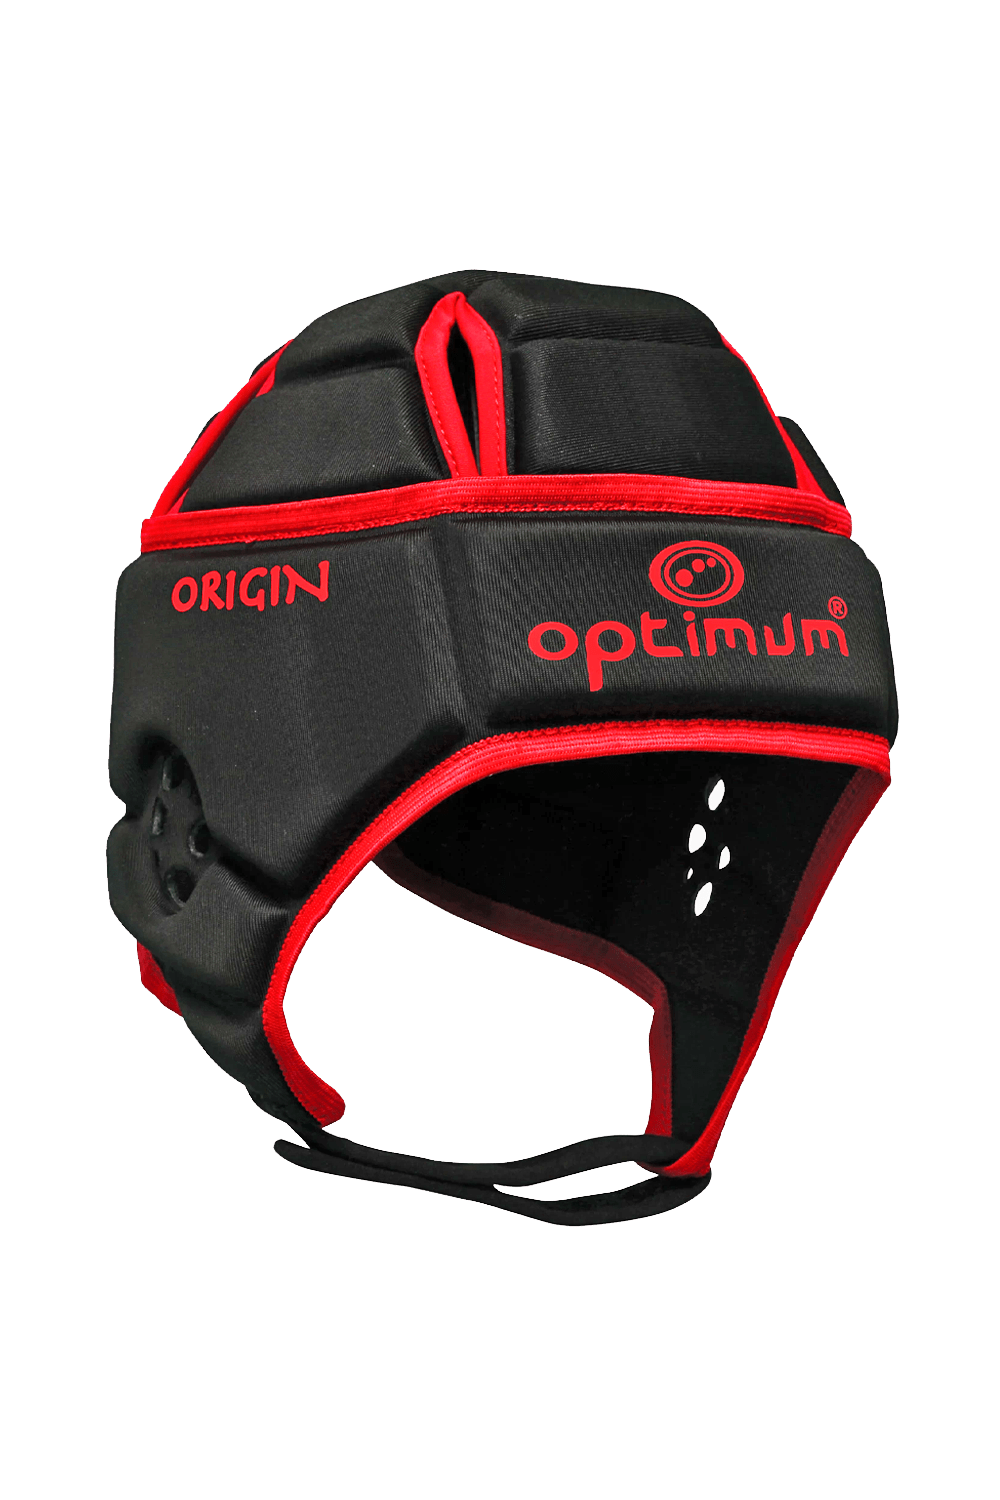 Origin Red Headguard - Optimum